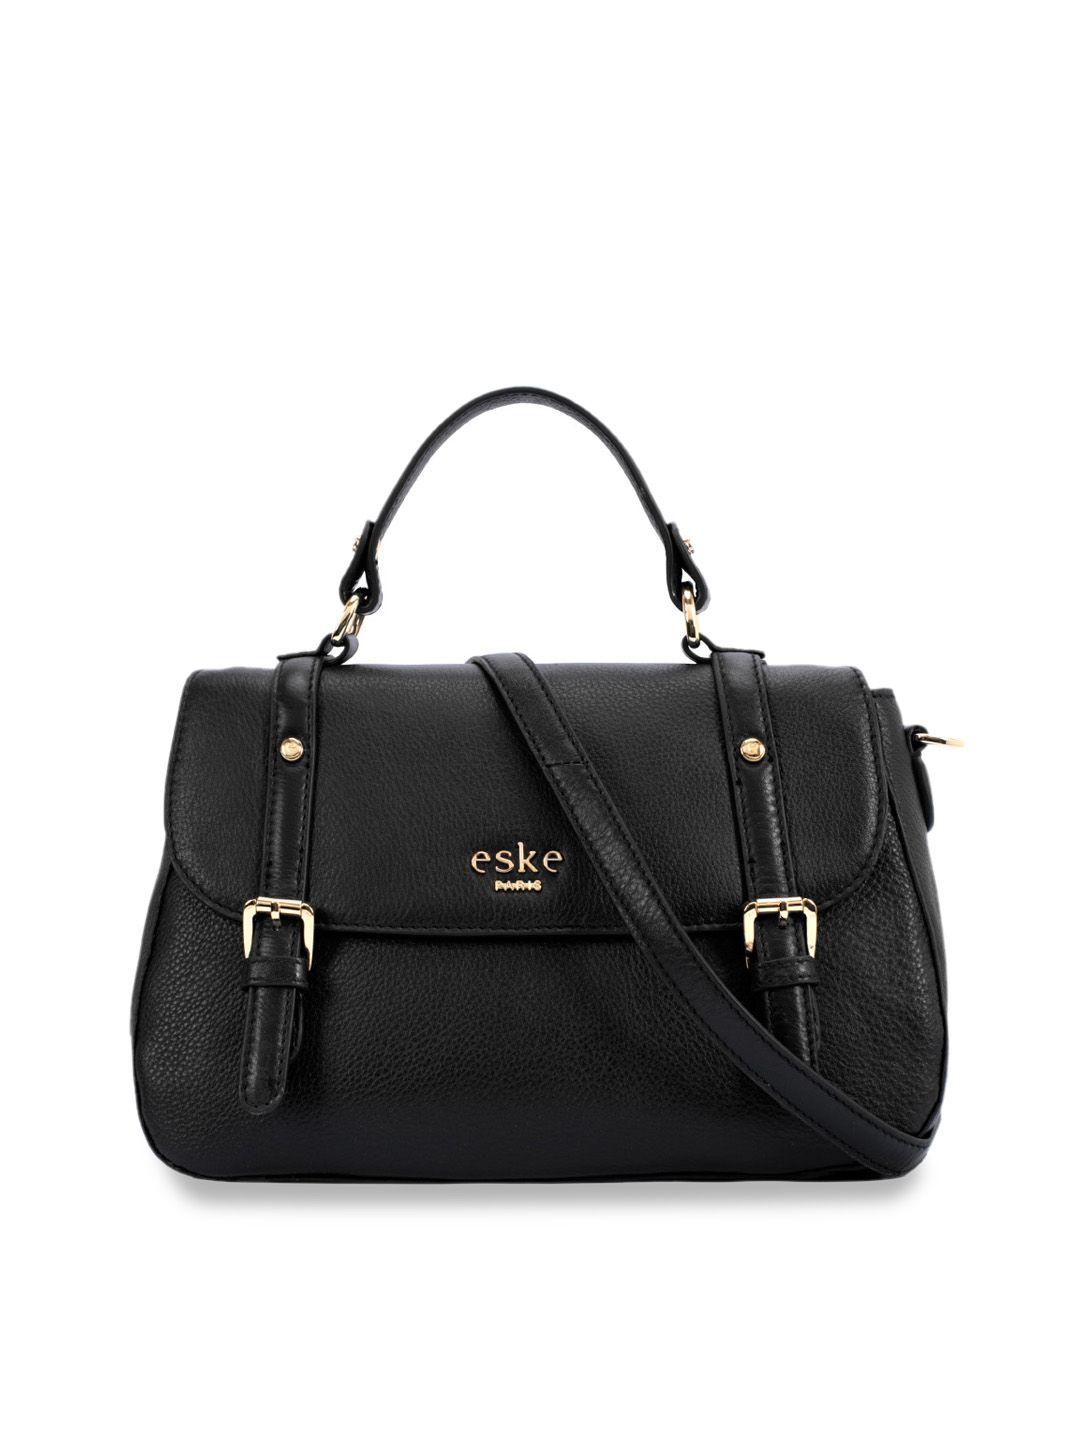 eske black solid leather satchel bag